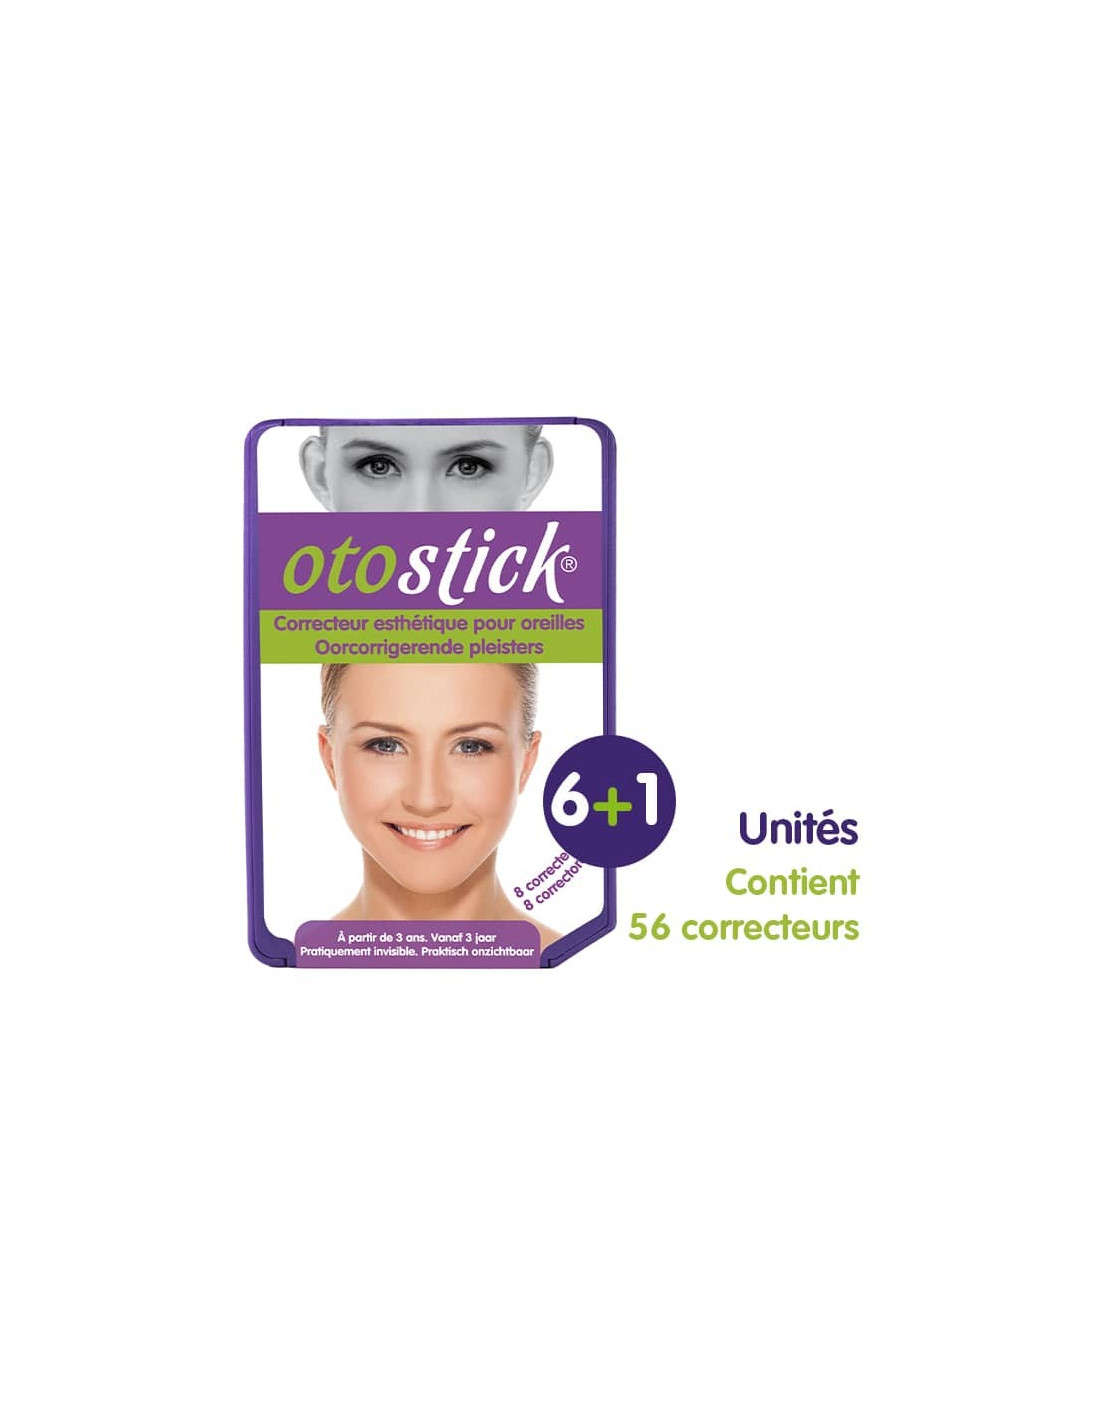 otostick - #Otostick est discret et ses résultats sont immédiats, la  meilleure solution pour la séparation de vos oreilles. 😉💜 Visitez notre  site Web pour plus d'informations. ☺️👌 www.otostick.com #Correcteur  #Esthétique #Oreilles #